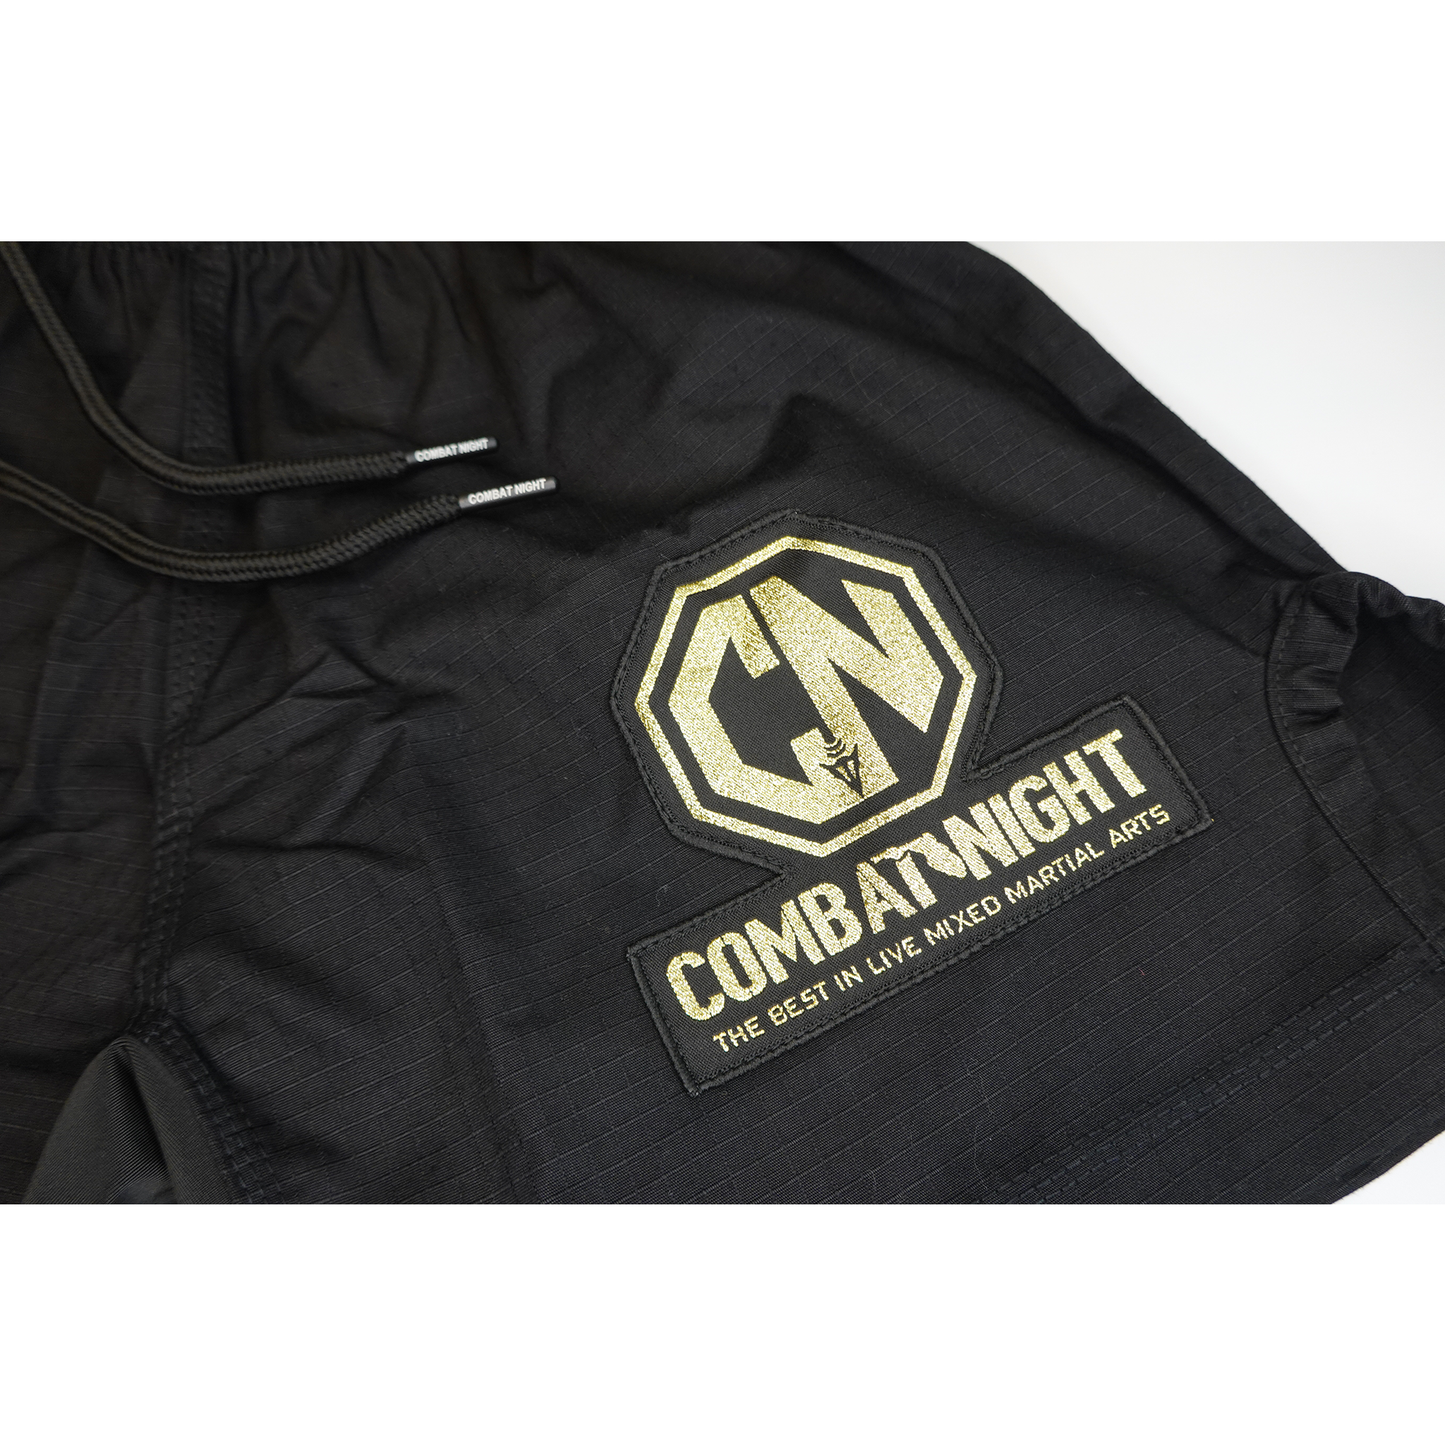 Combat Night Gi Shorts